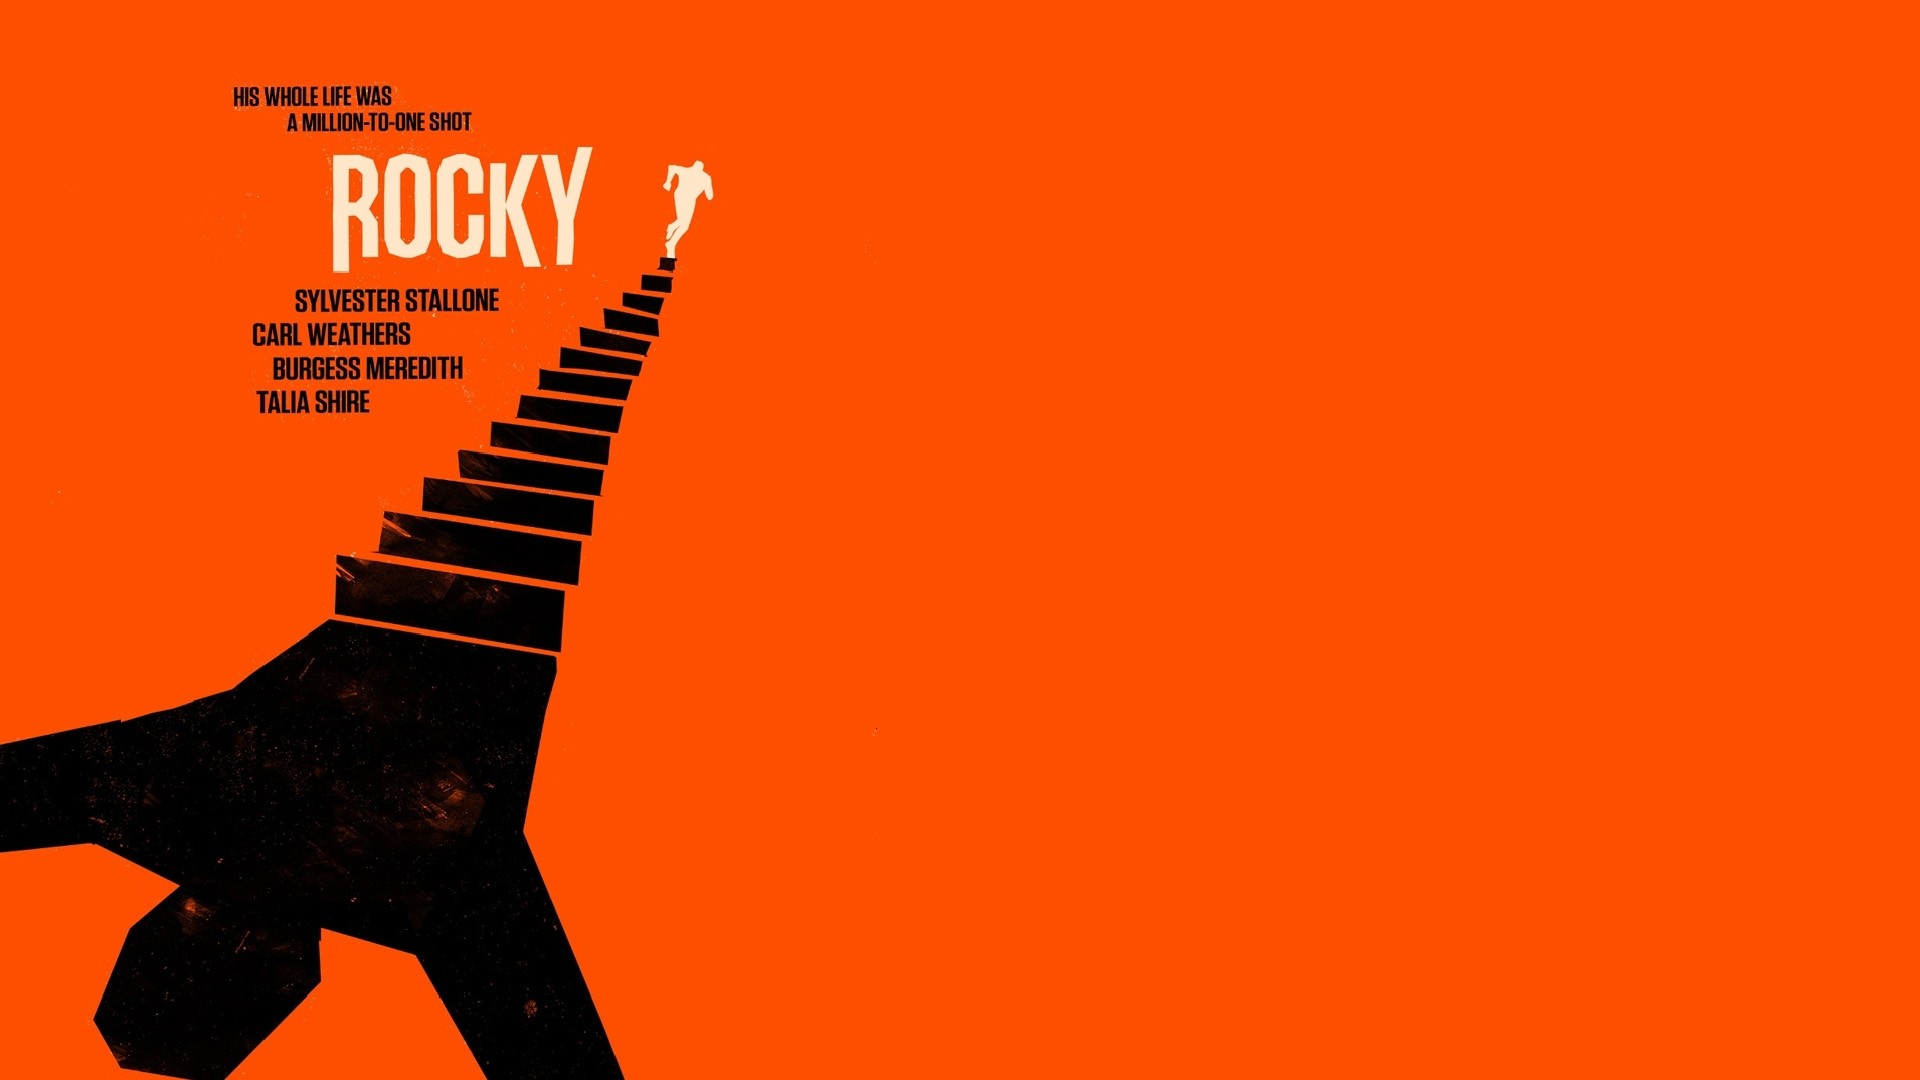 General 1920x1080 movies Rocky (movie) artwork movie poster orange background